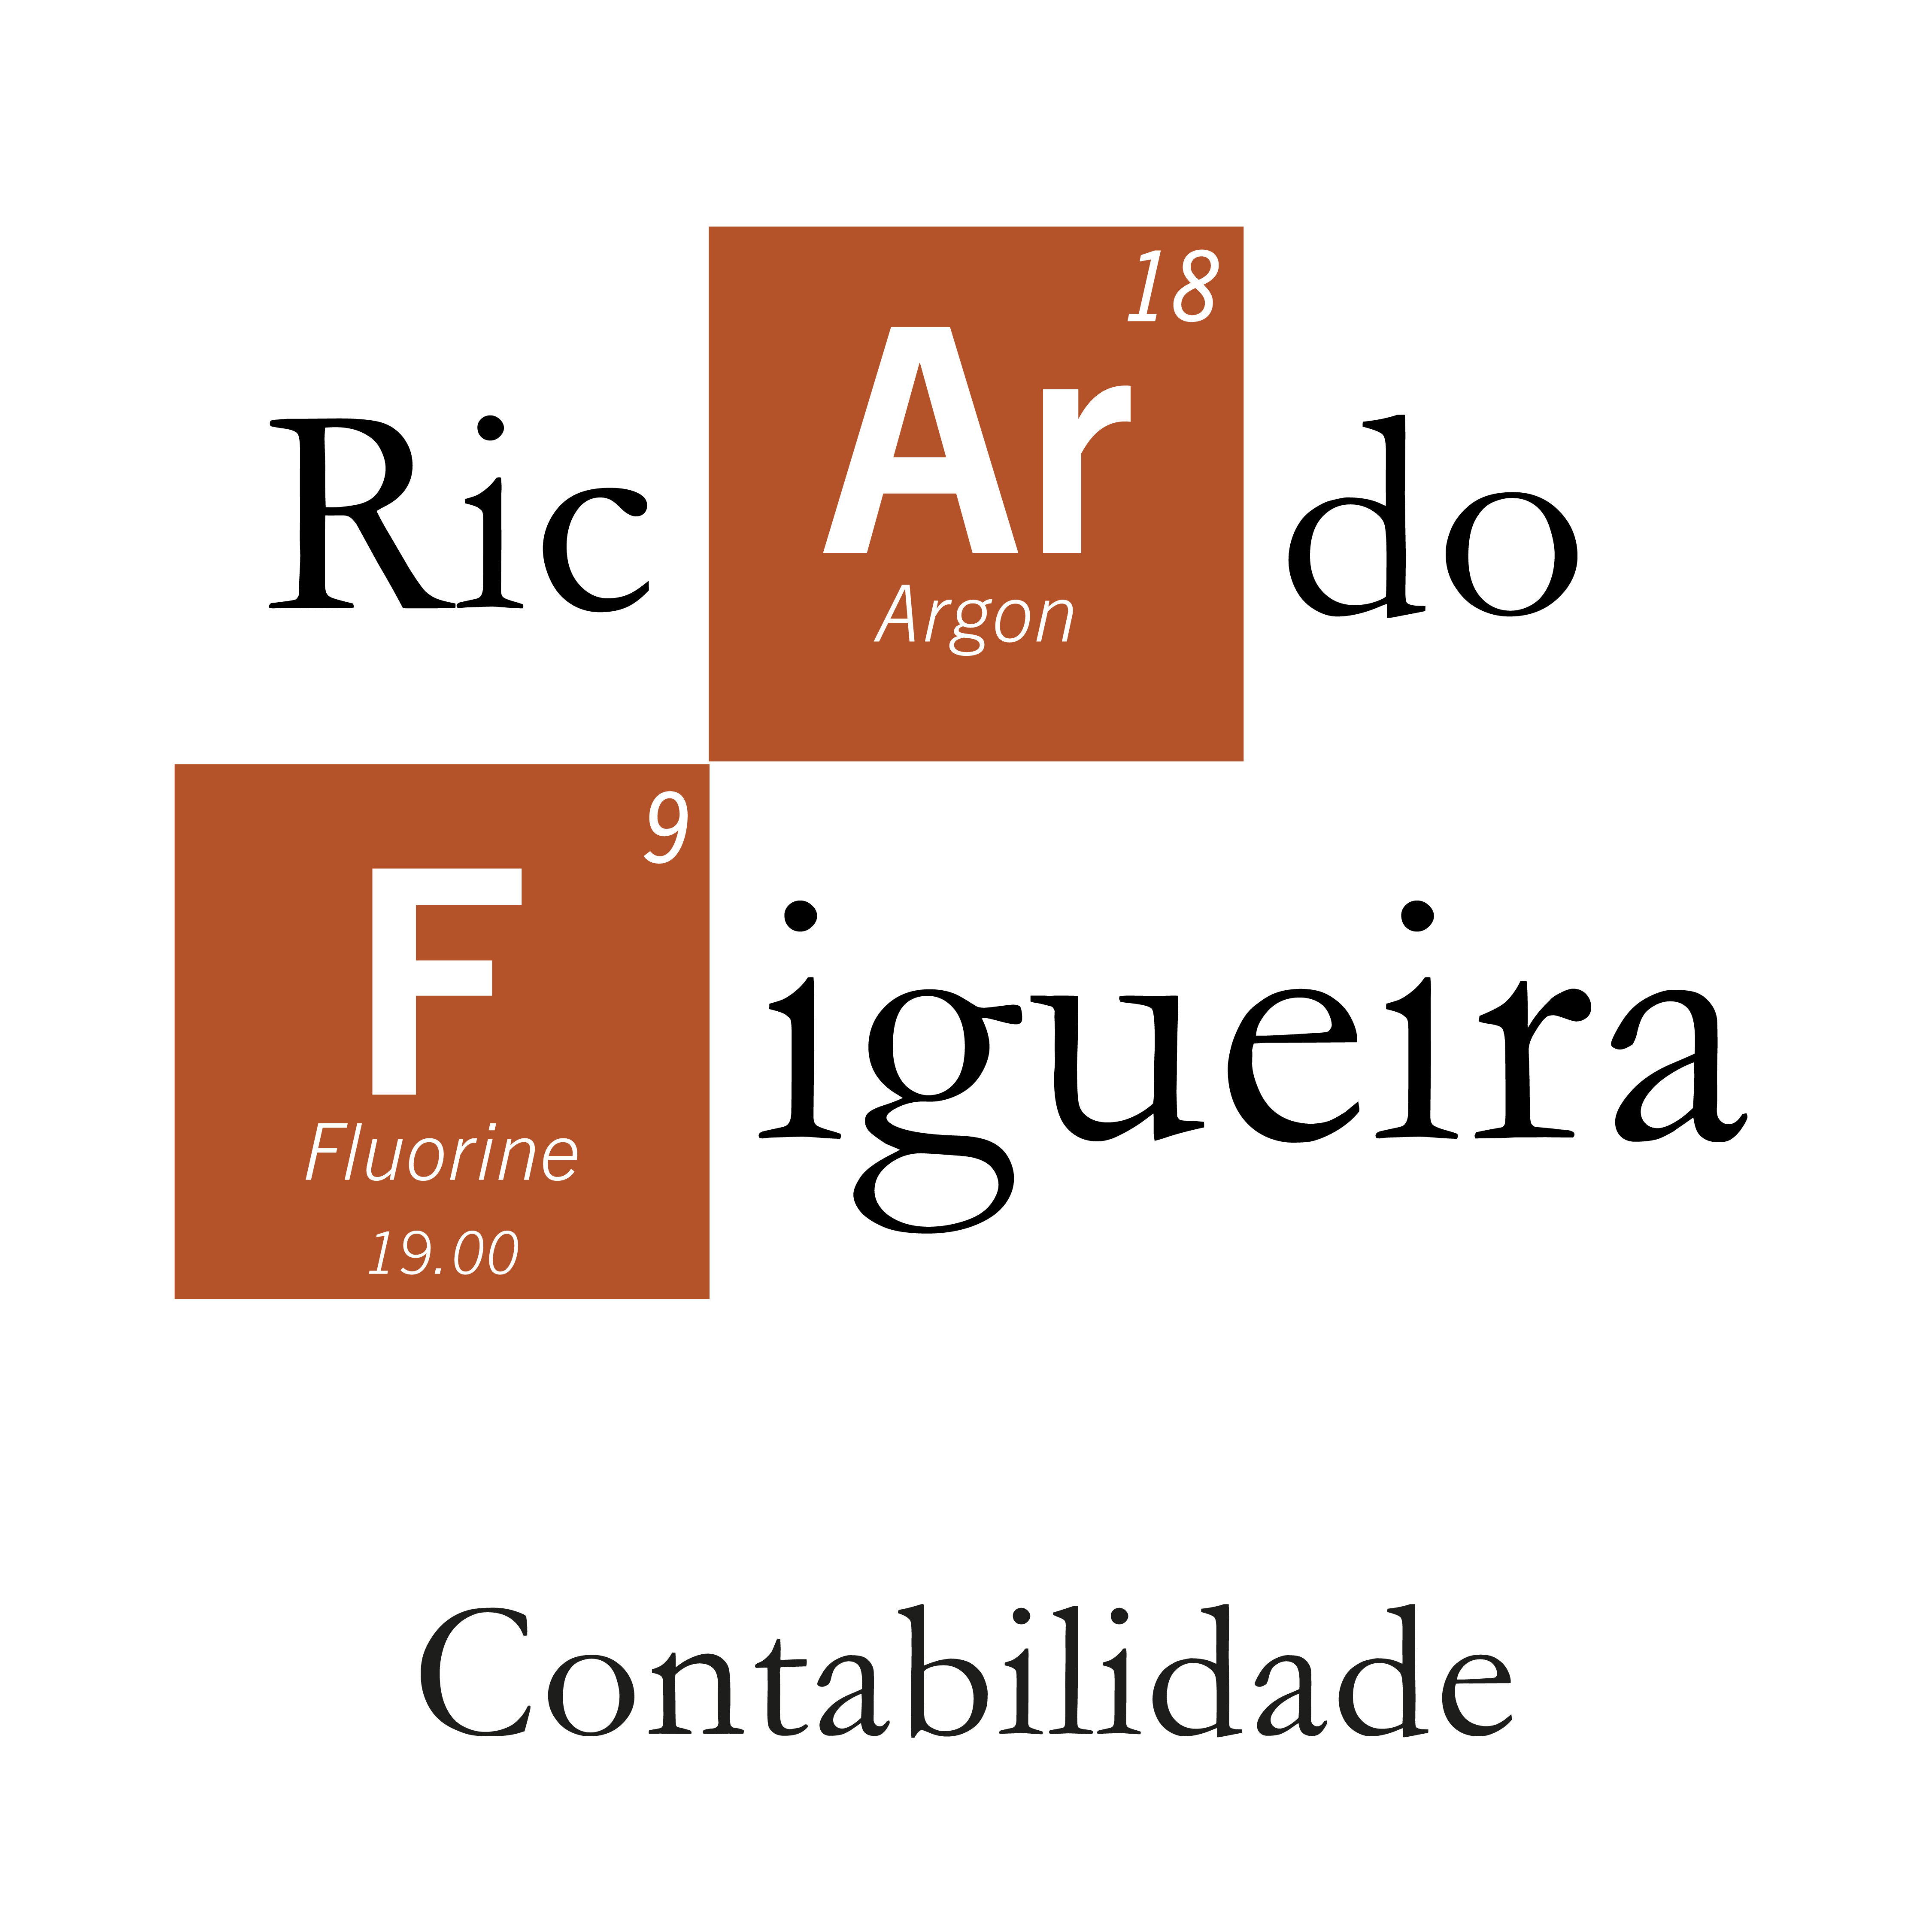 Ricardo Figueira